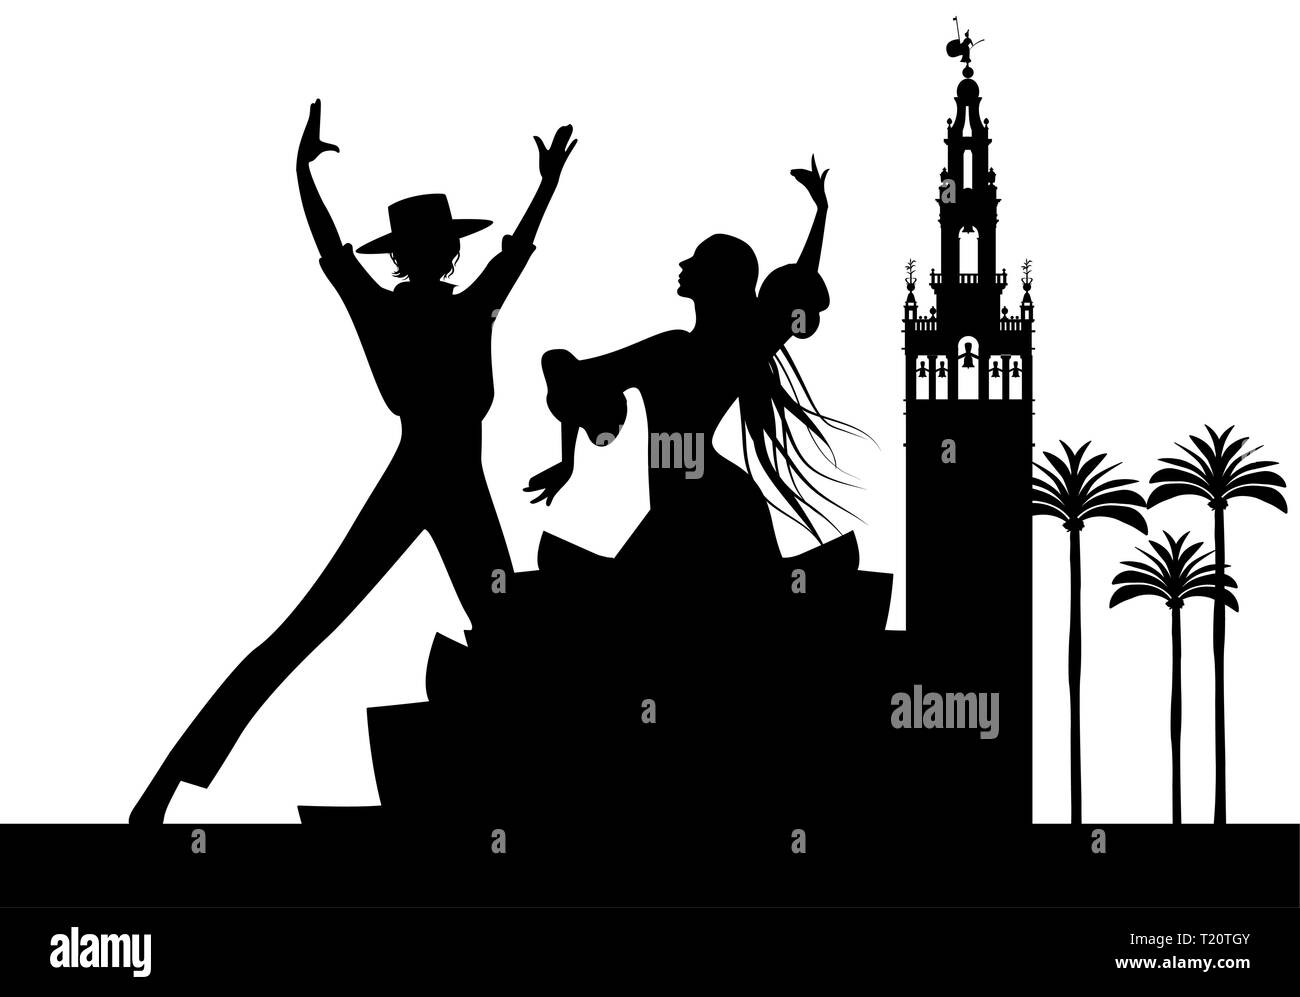 Silhouette de danseurs de flamenco espagnol, quelques palmiers et monuments de Séville. (La Giralda) Illustration de Vecteur